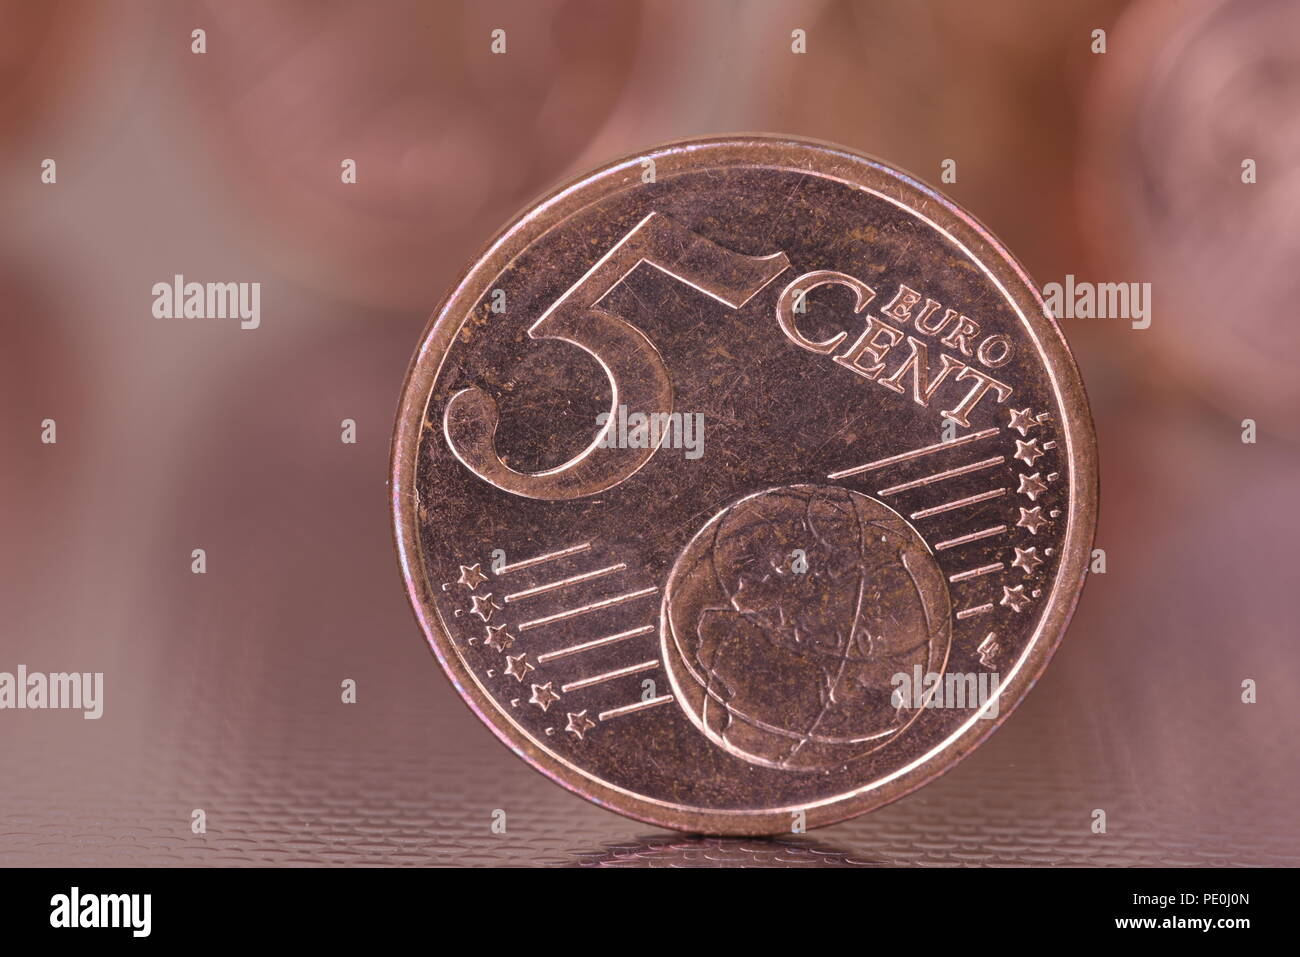 5 euro cent coin Stock Photo